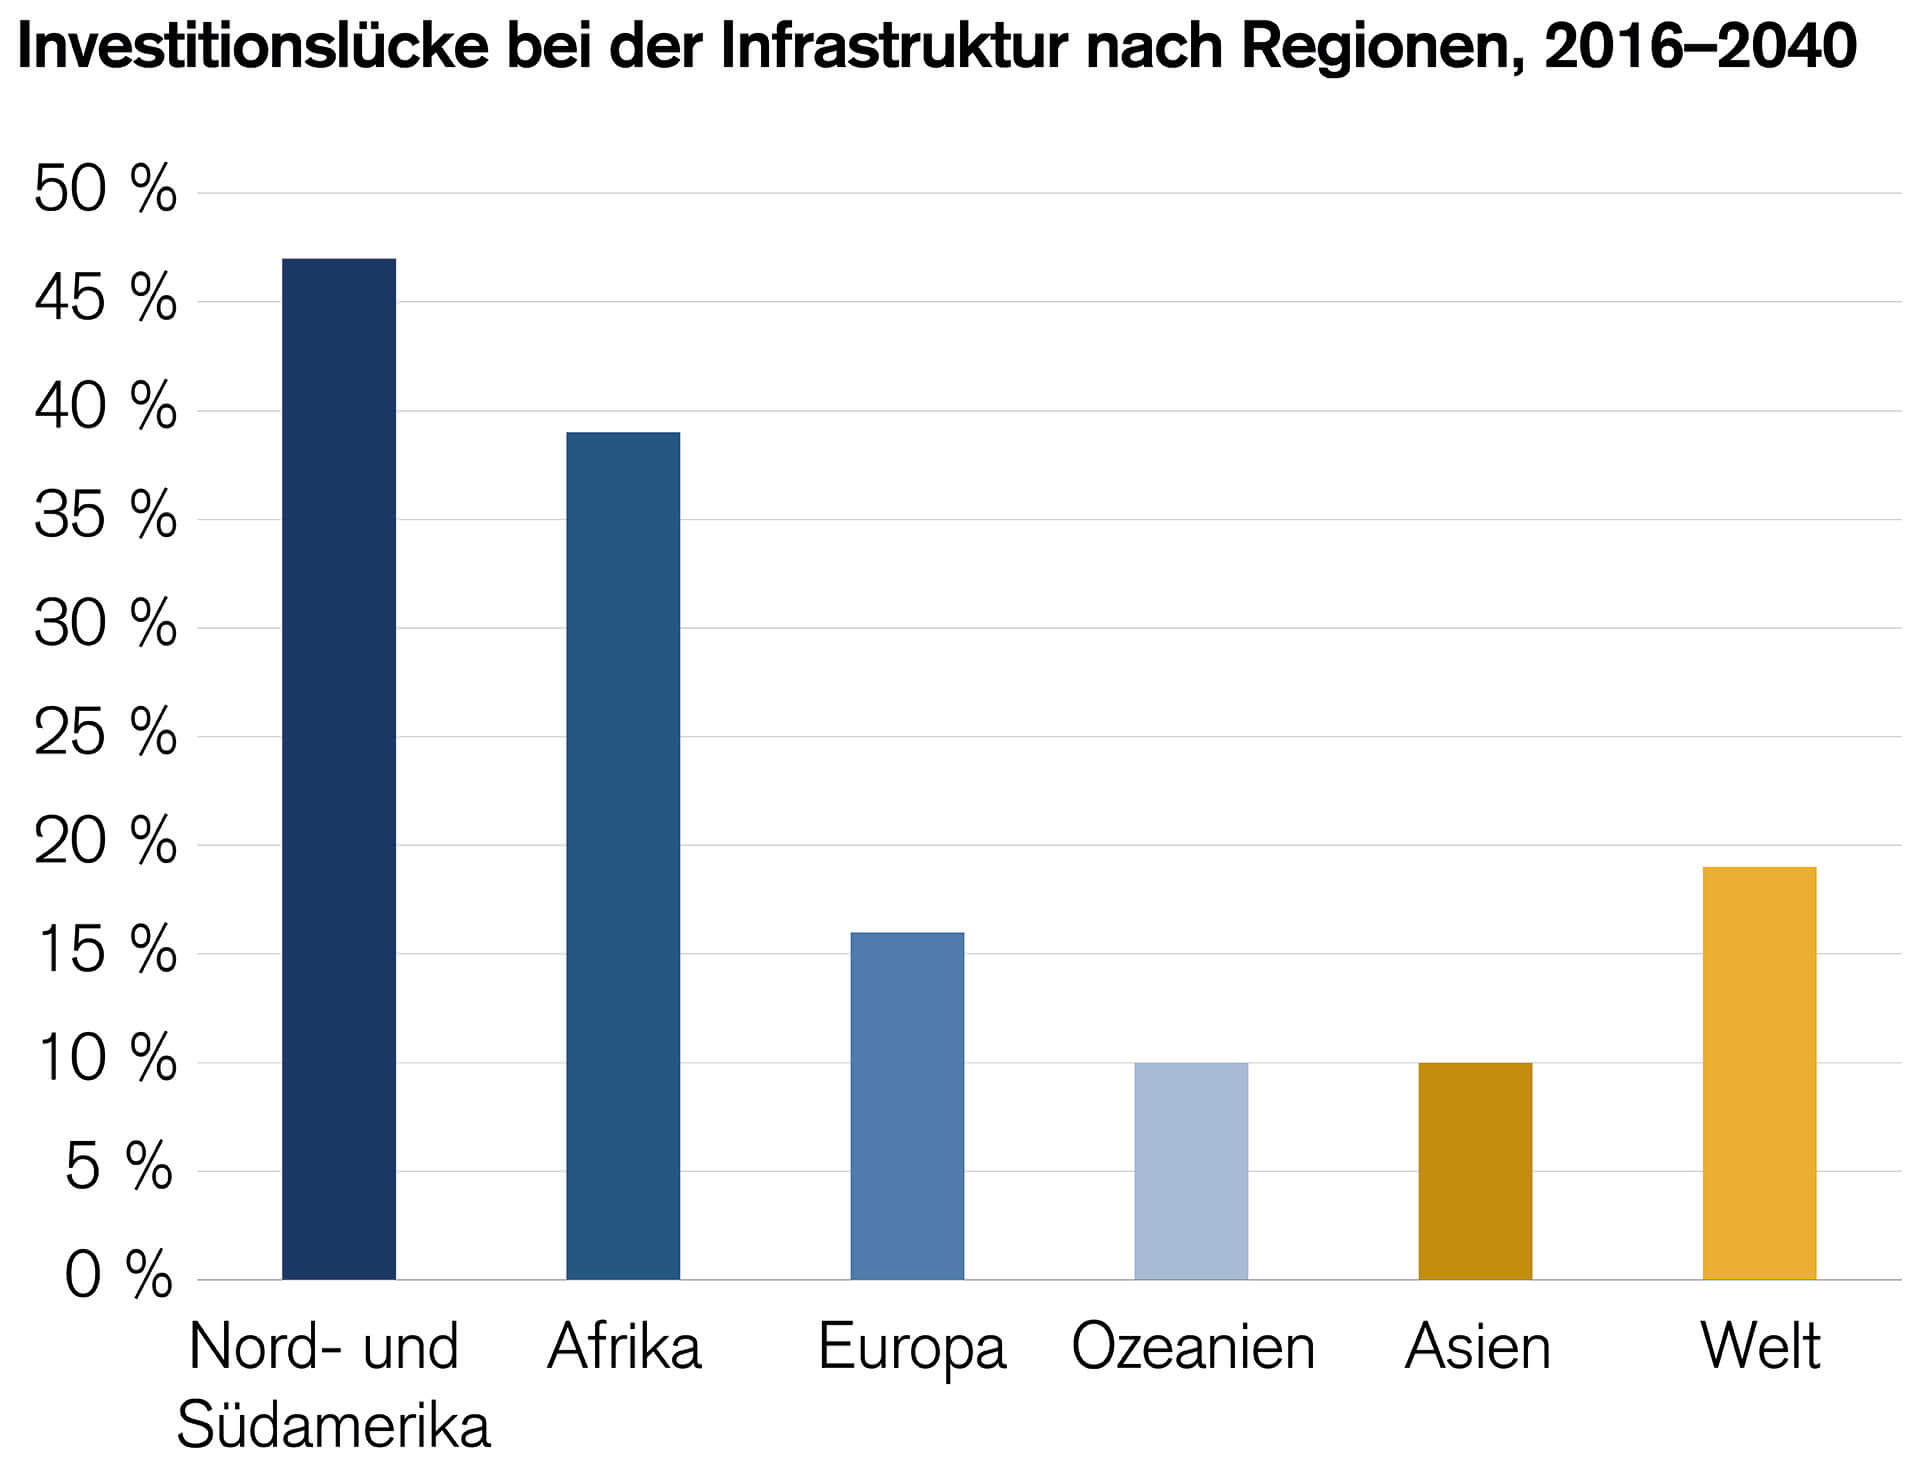 Säulendiagramm, das die Lücke bei den Infrastrukturausgaben nach Regionen für den Zeitraum 2016–2040 zeigt.